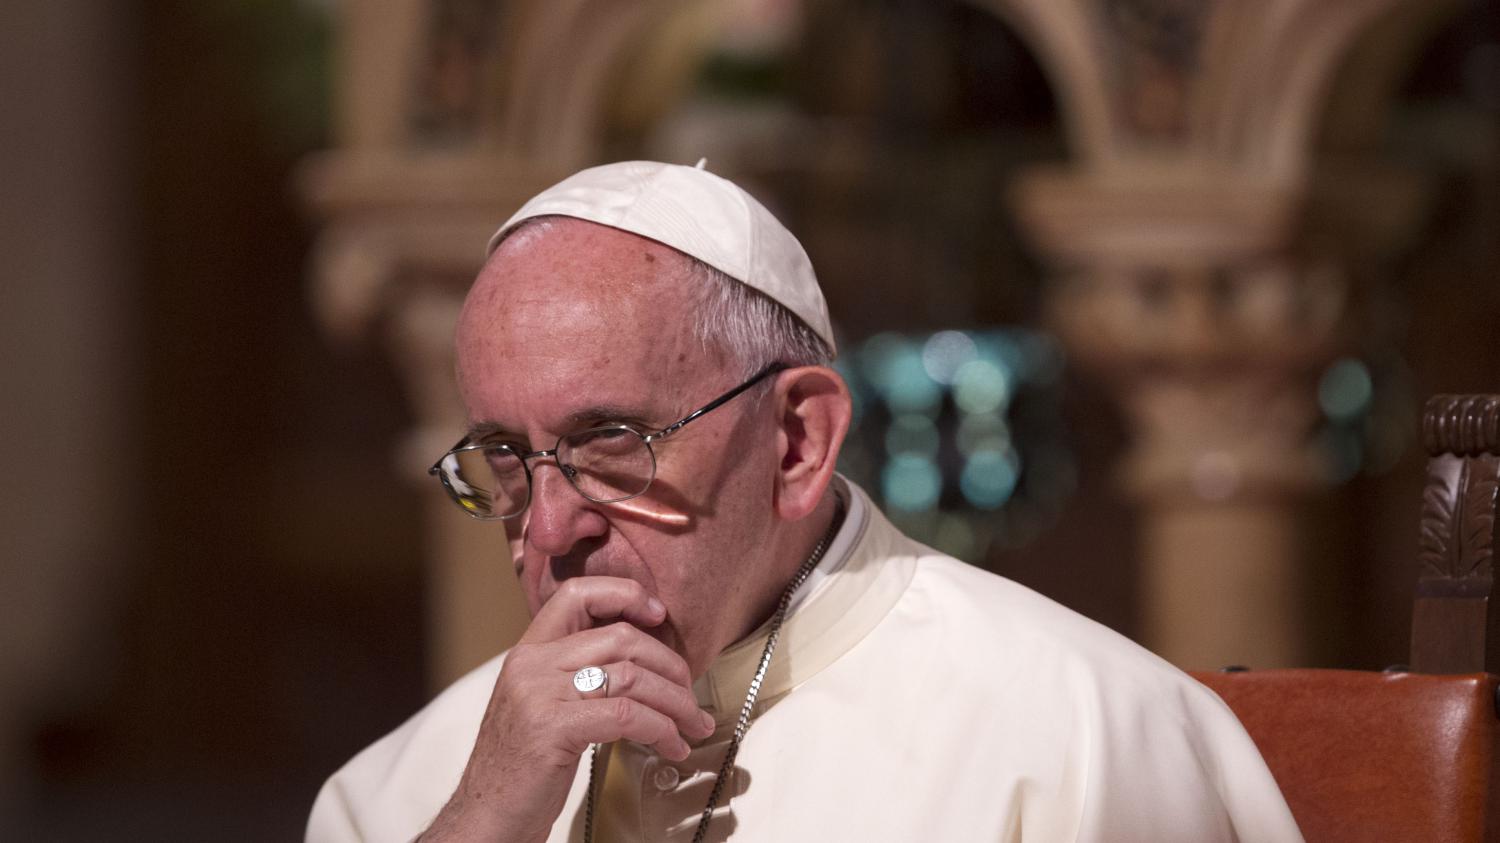 Abus de religion, abus de la finance deux points qui exacerbent les tensions internationales dit le pape